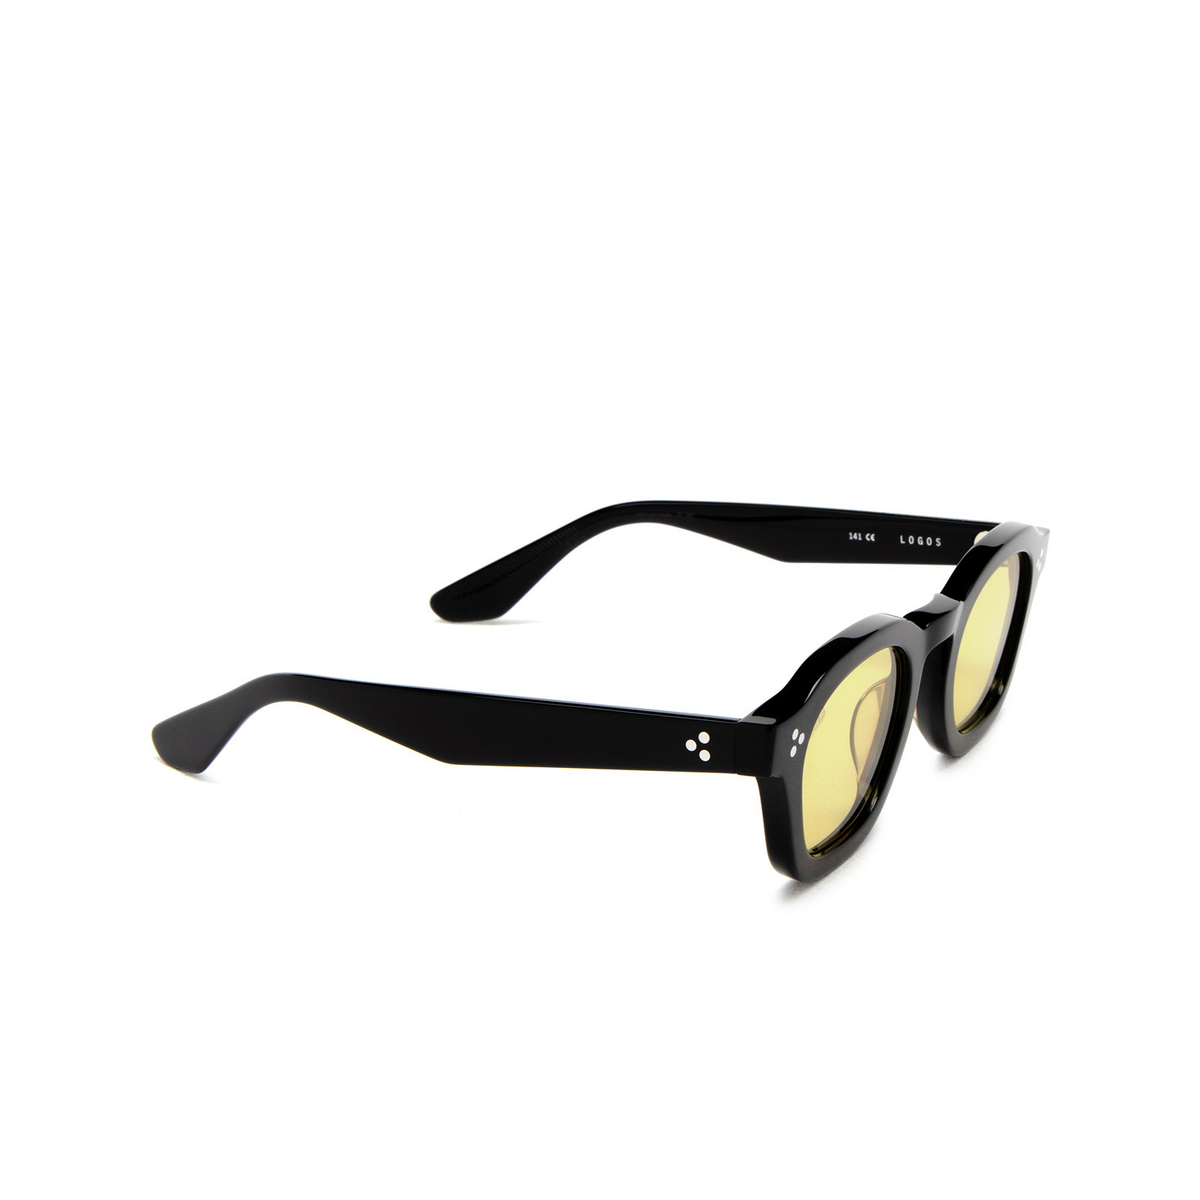 Akila LOGOS Sunglasses 01/78 Black - three-quarters view